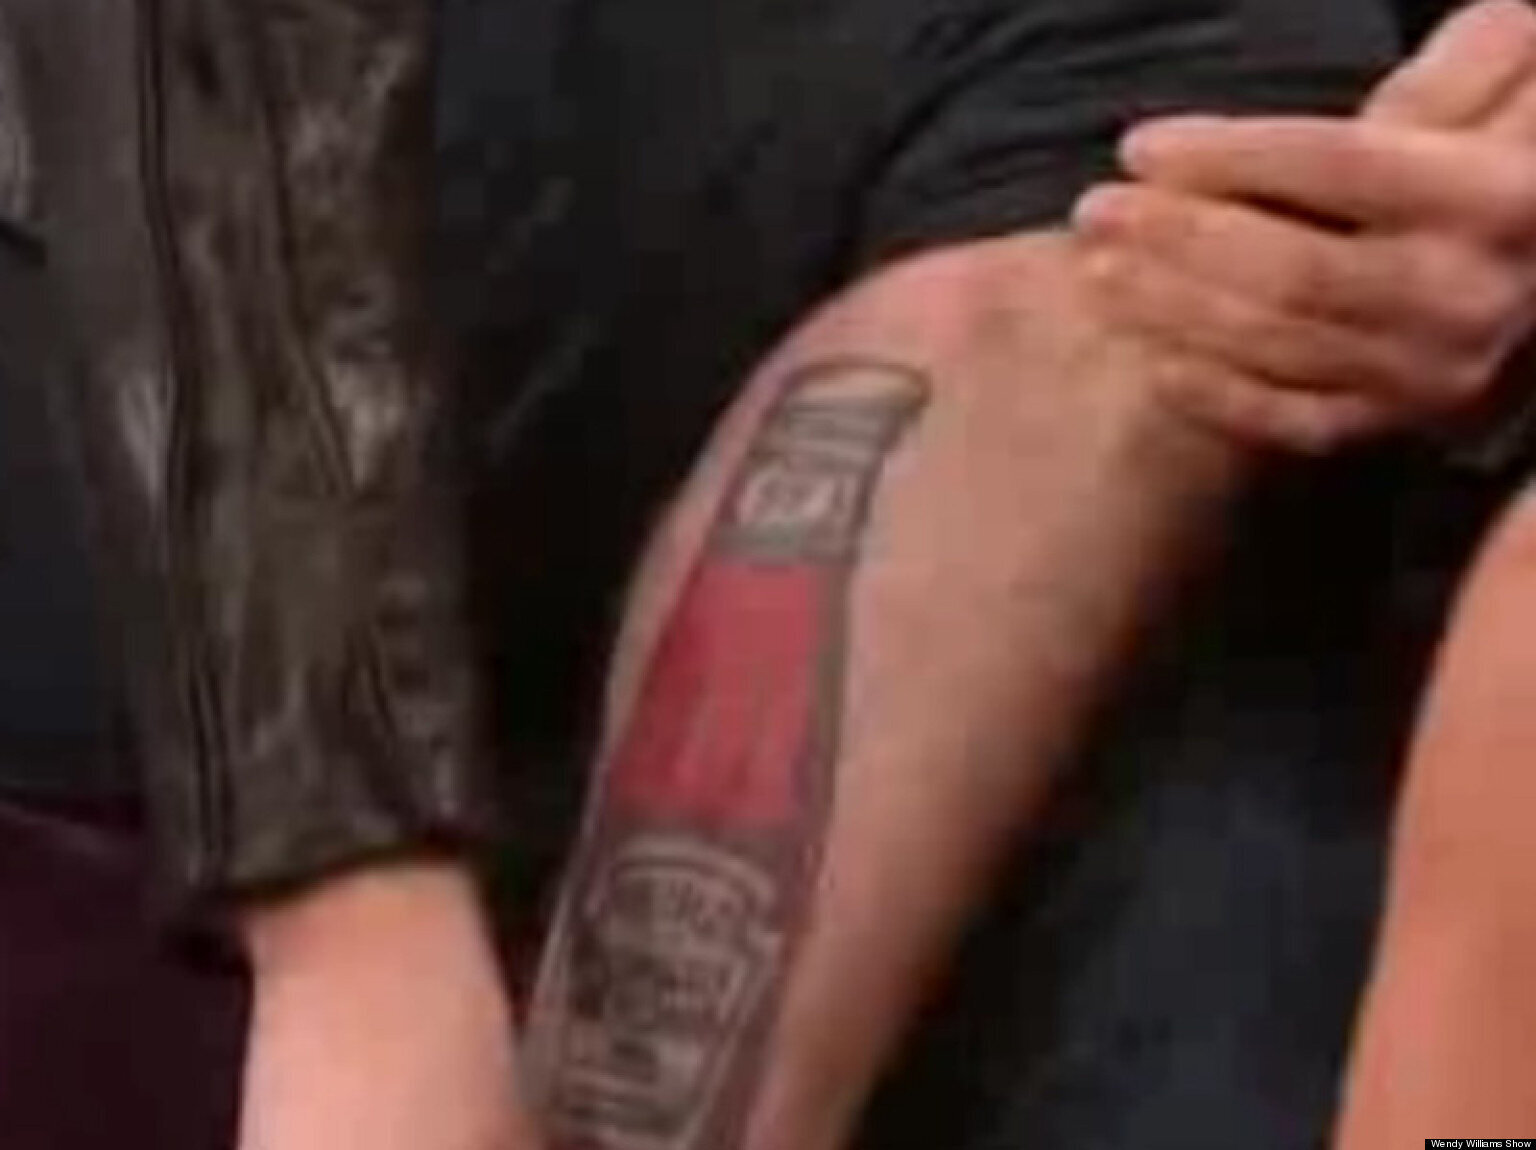 Twilight star Rathbone gets odd tattoo